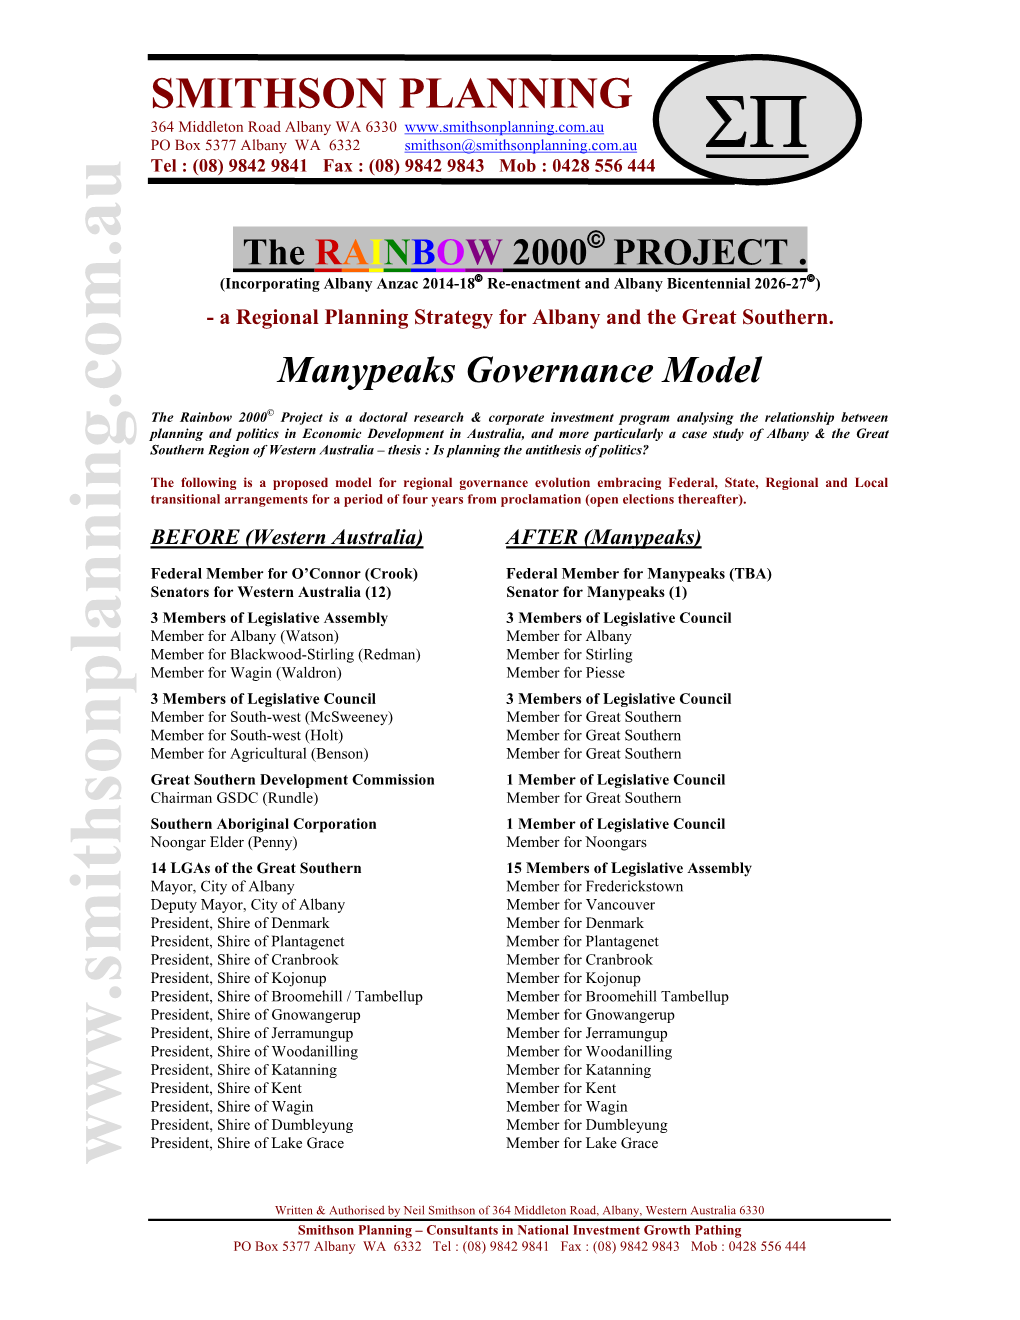 Manypeaks Governance Model